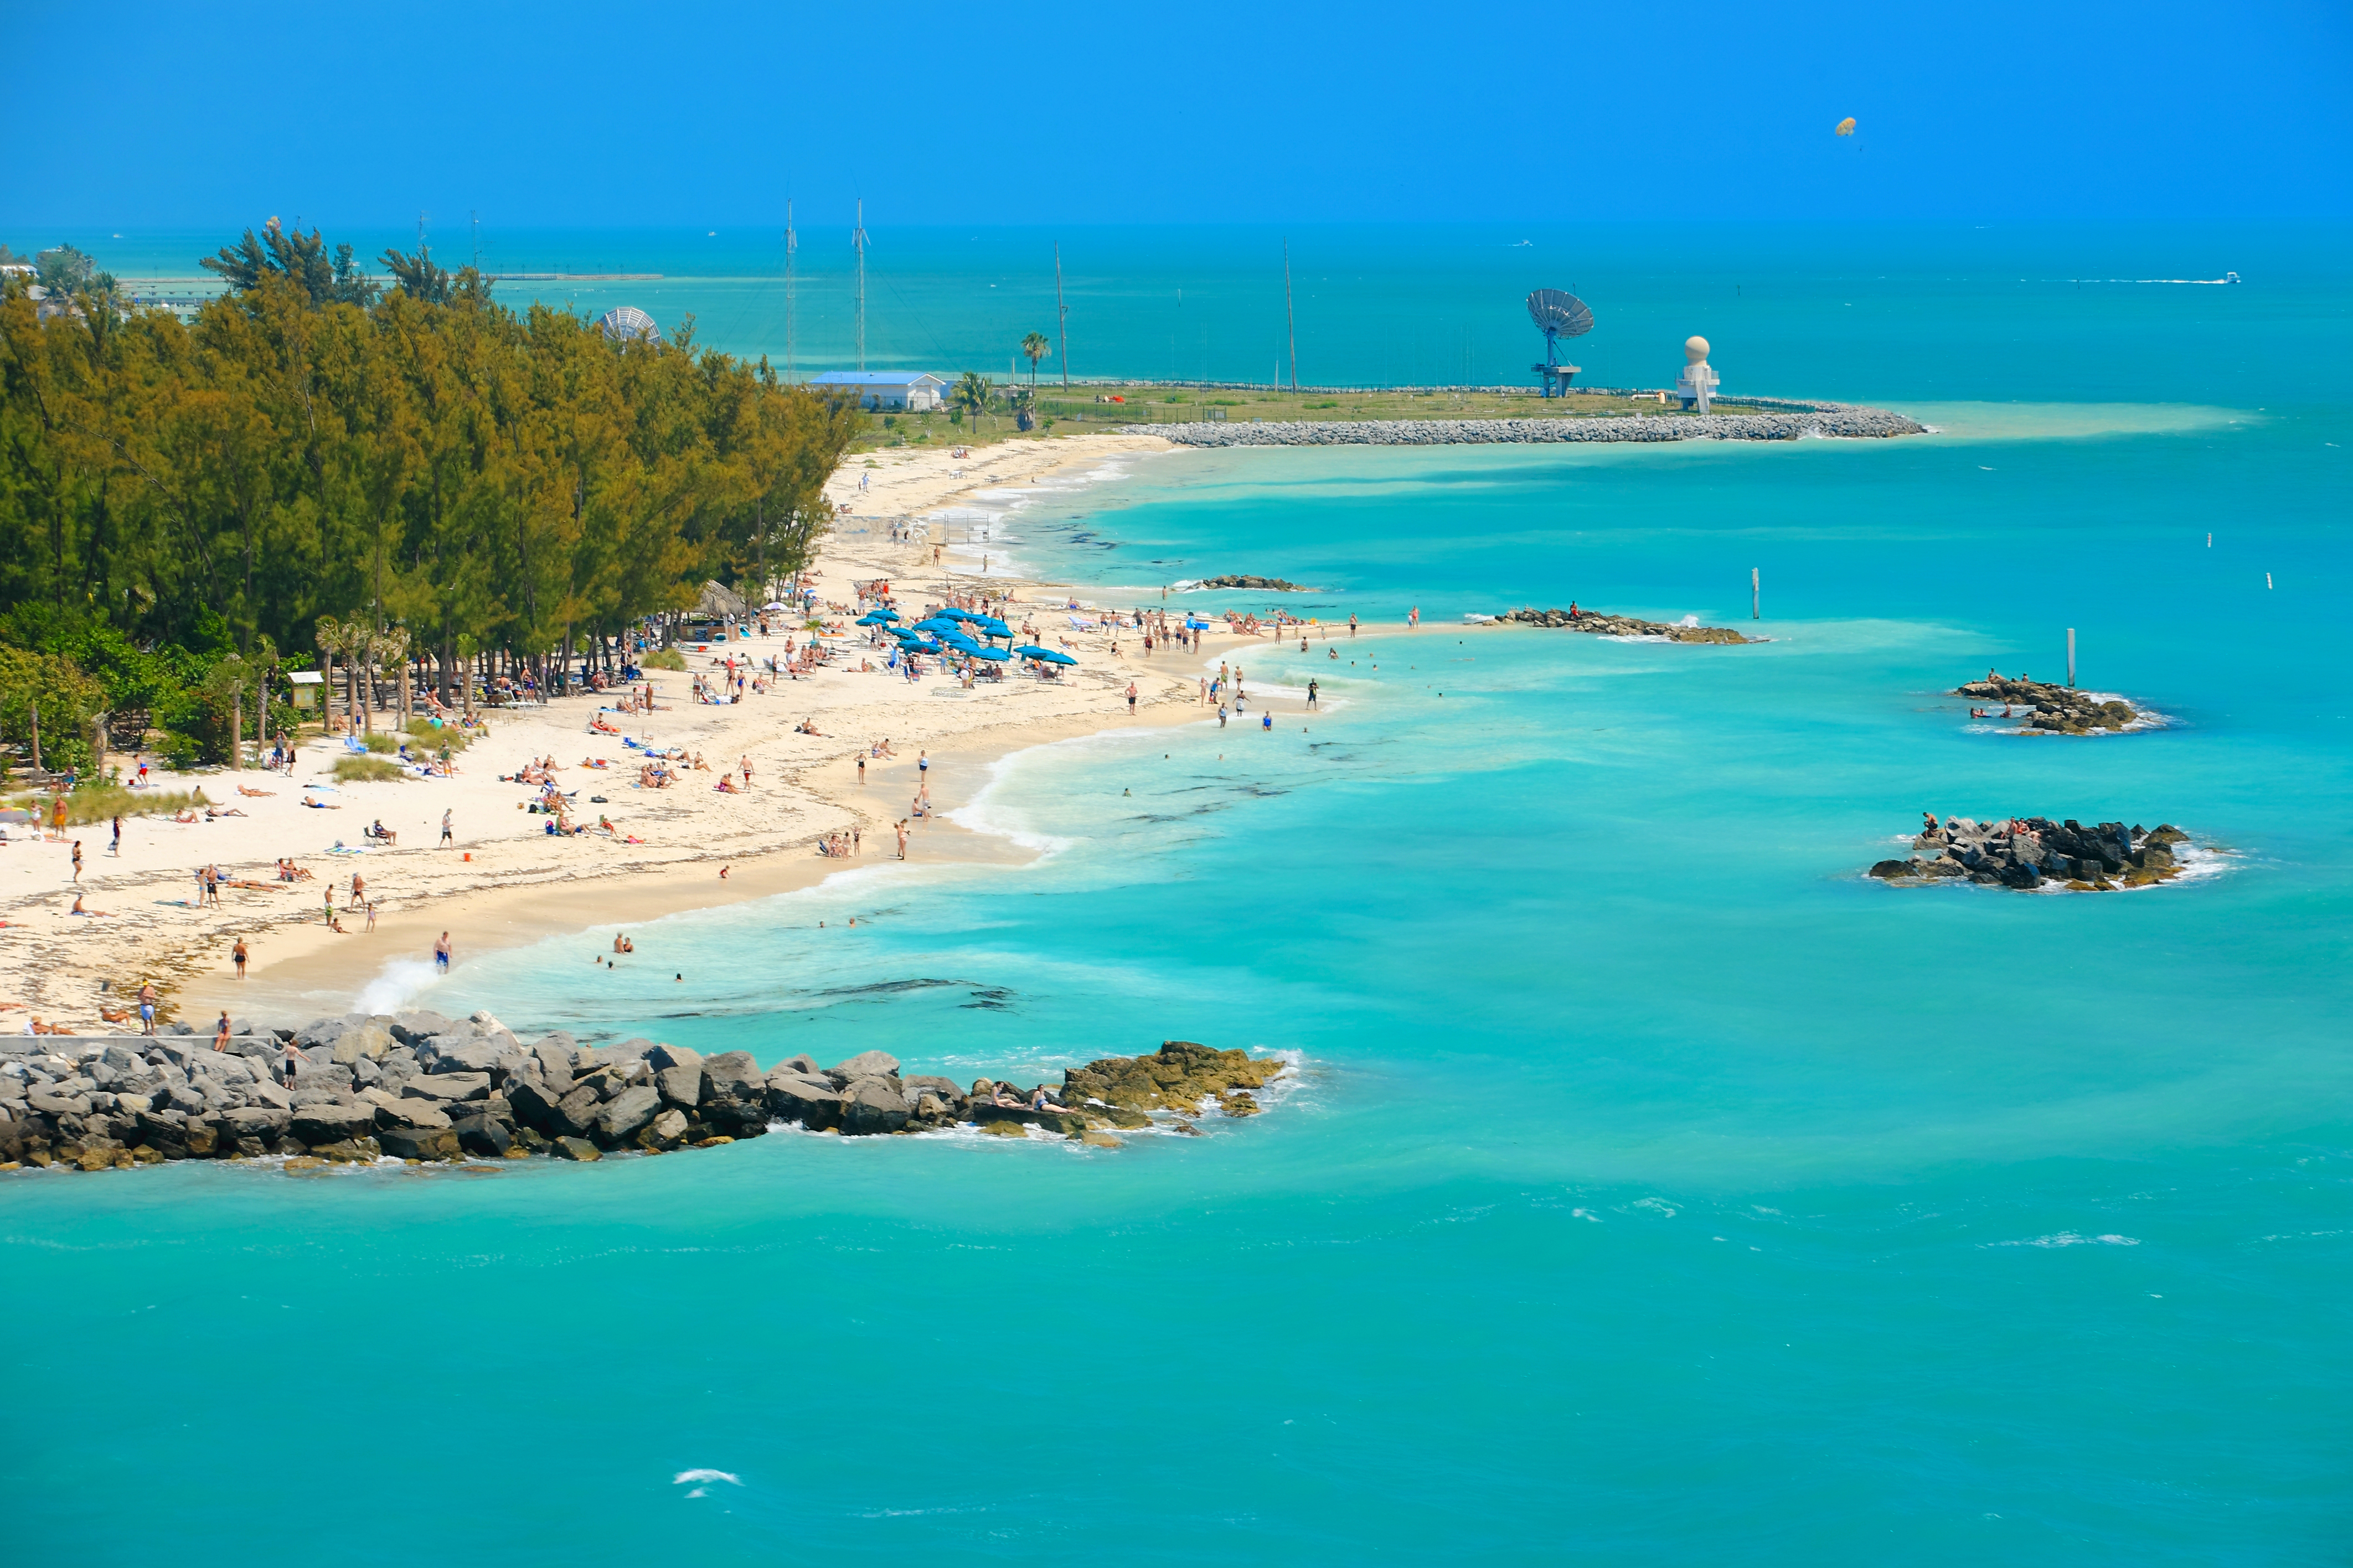 Plan a Weekend Getaway to Key West  